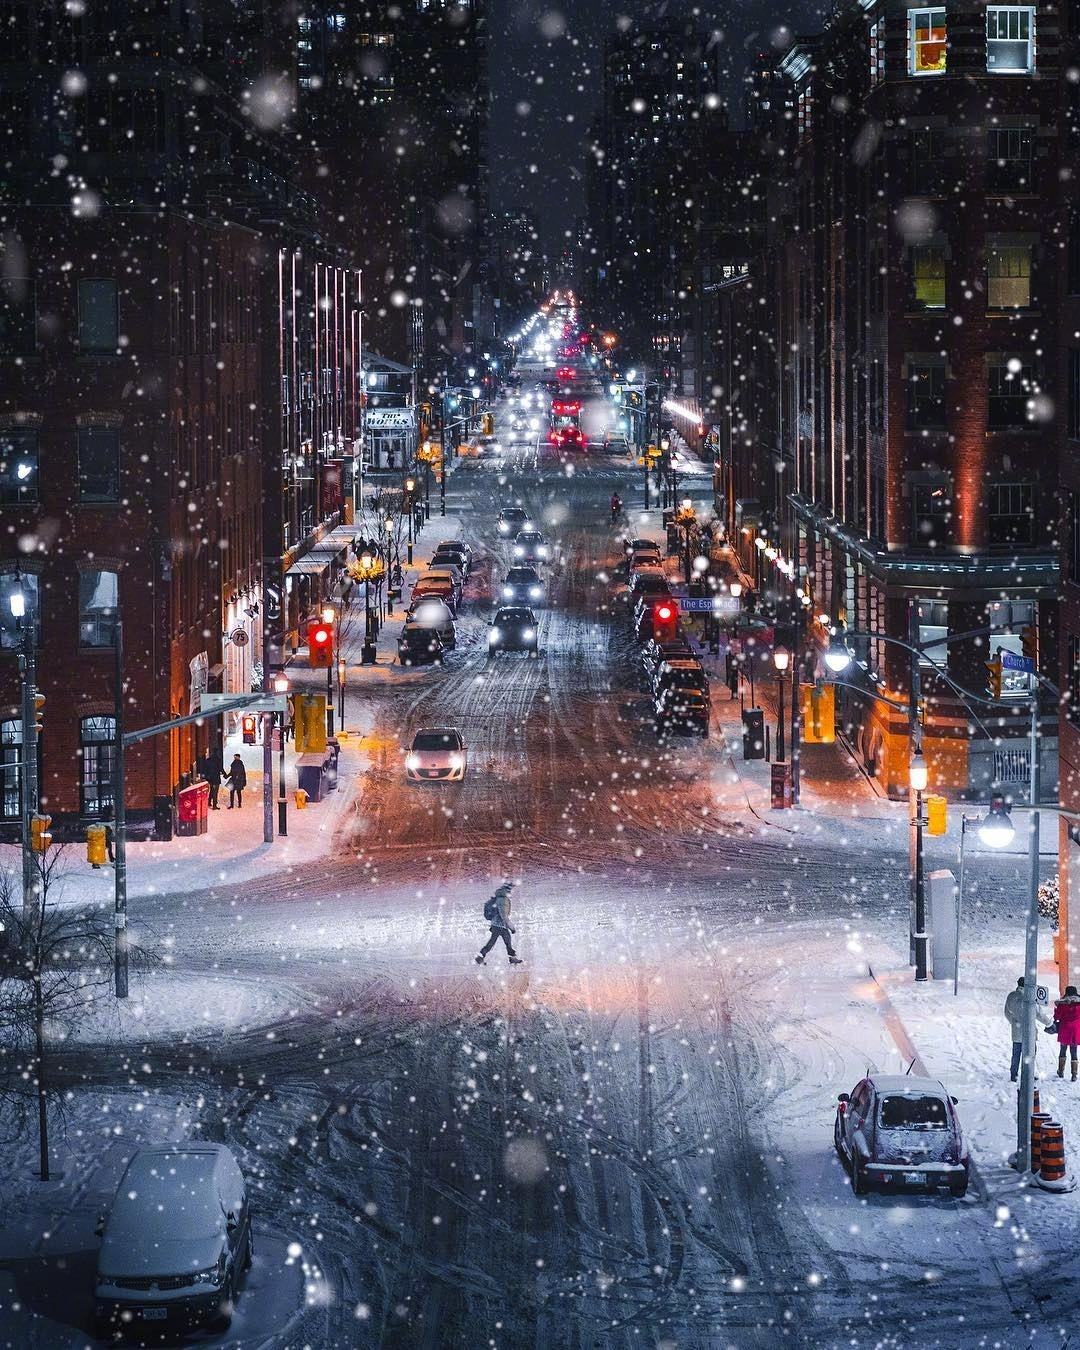 当雪景遇见夜色:夜晚雪景的6个拍摄技巧,把下雪天玩出